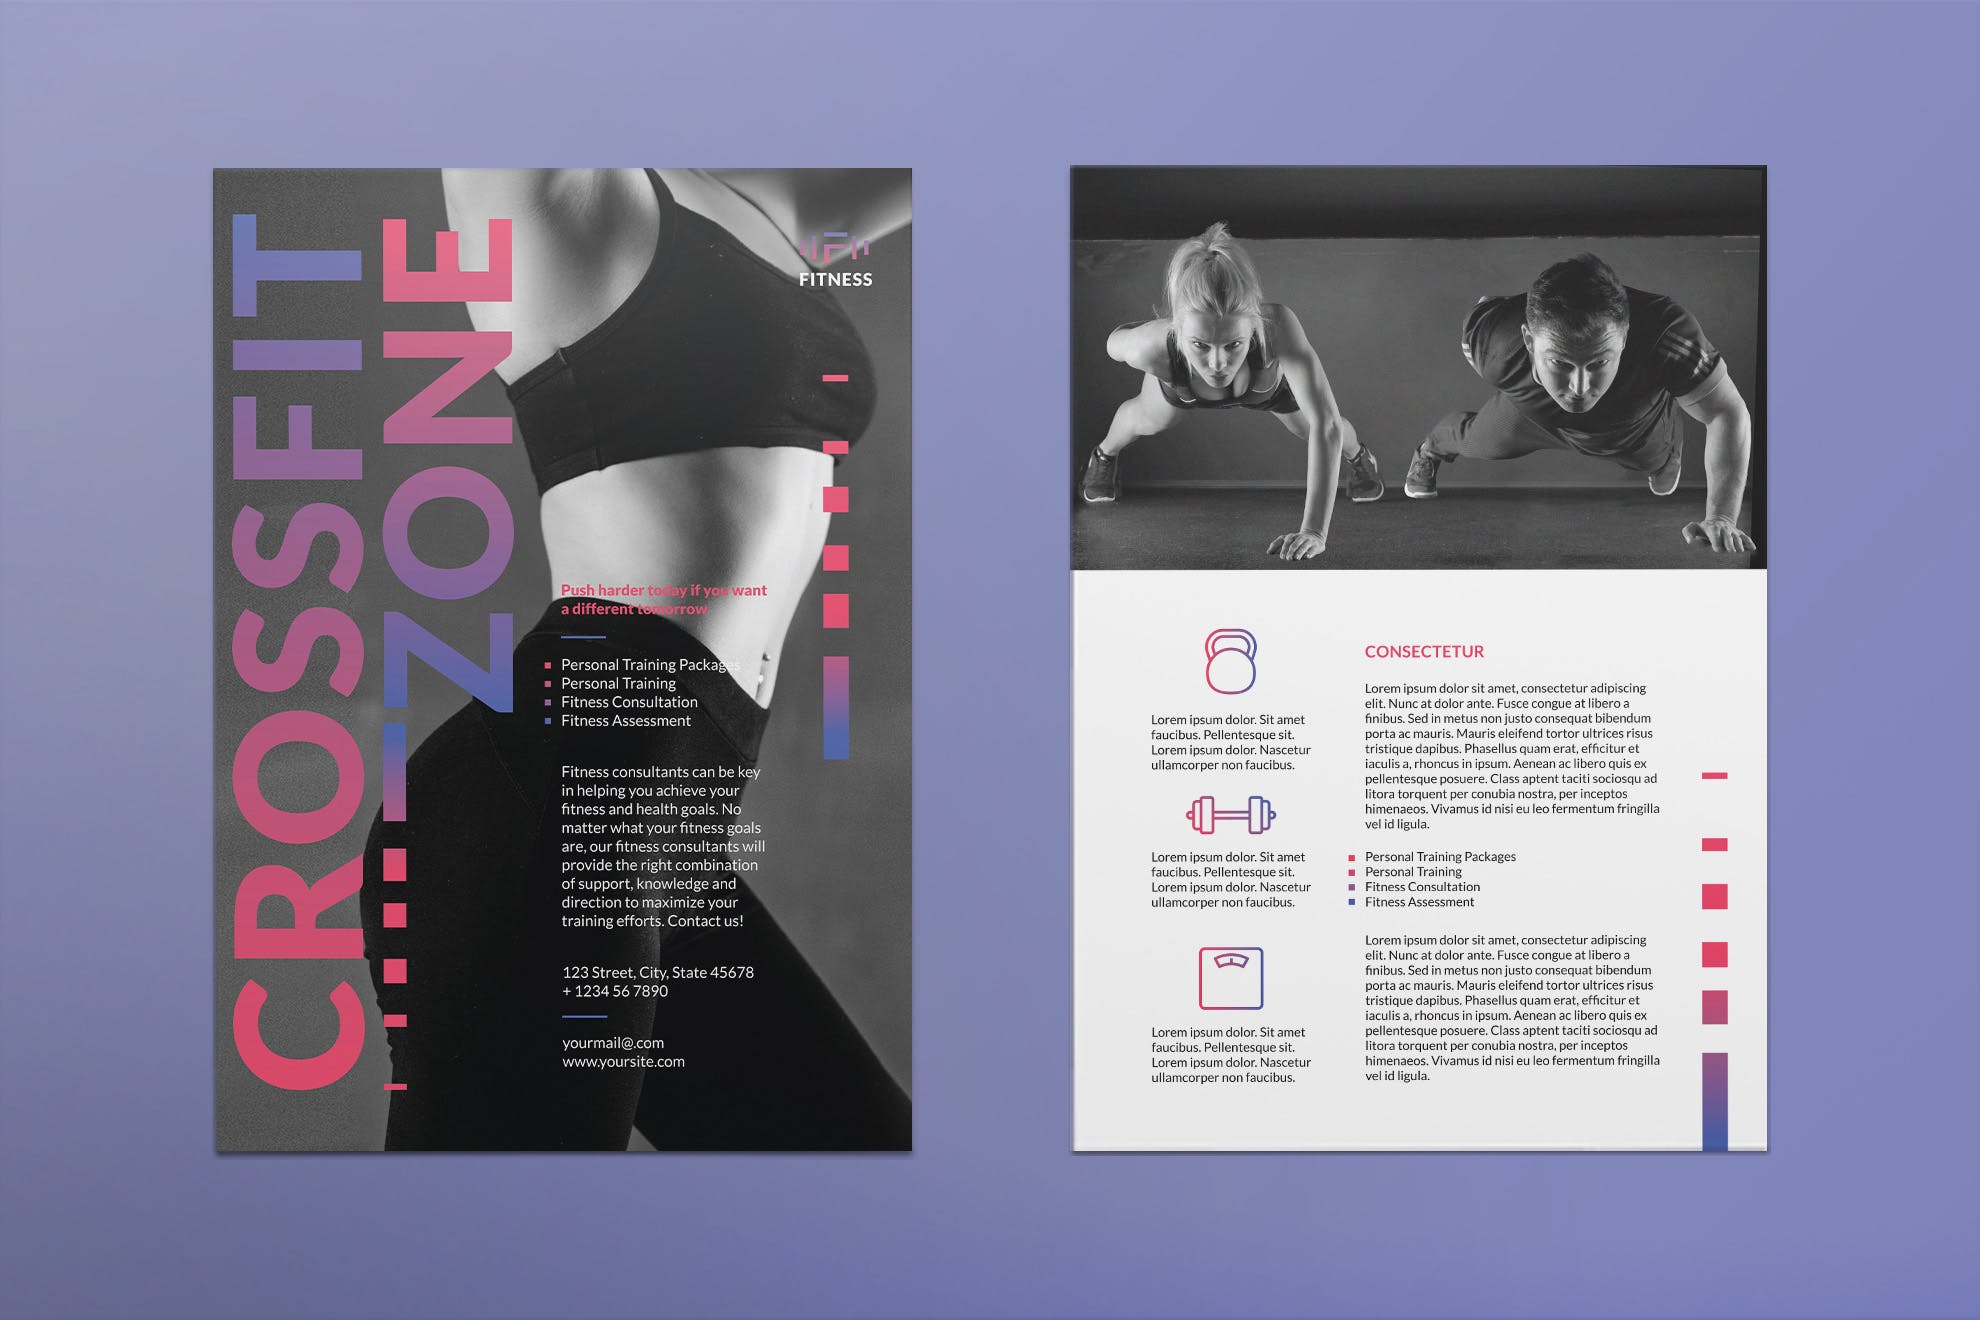 健身俱乐部/健身教练传单设计模板 Fitness Studio Flyer插图(1)